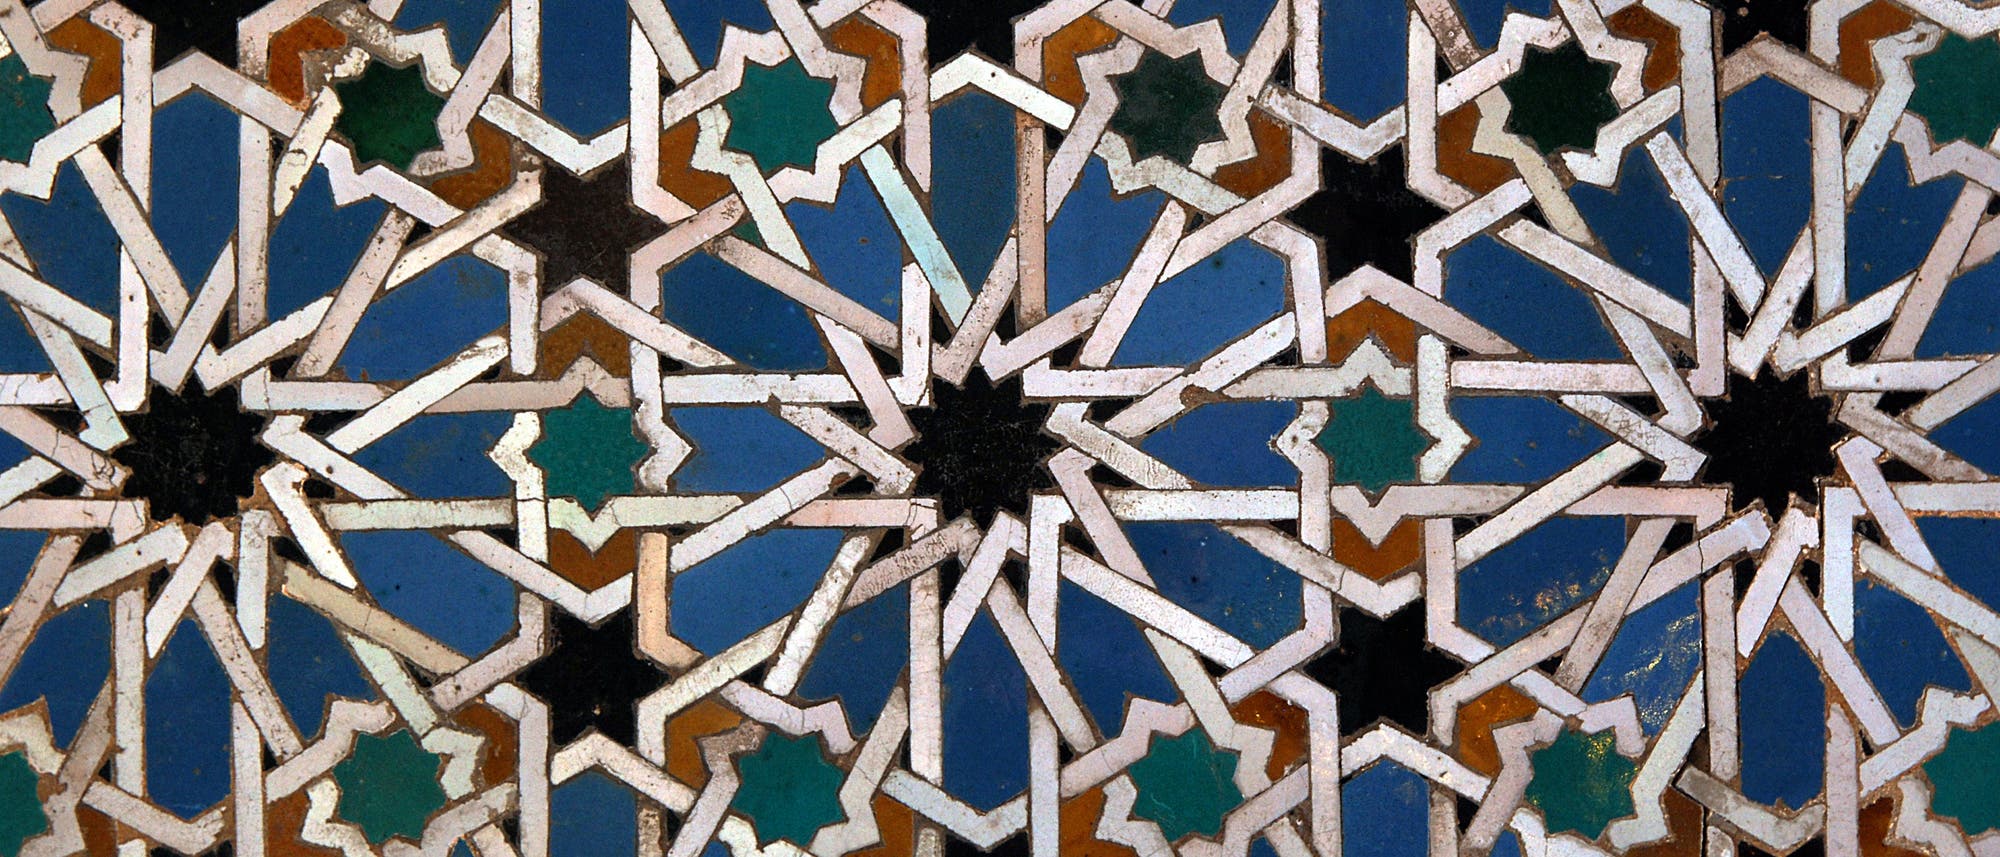 Arabische Fliesen erinnern mit ihrer Symmetrie an Quasikristalle